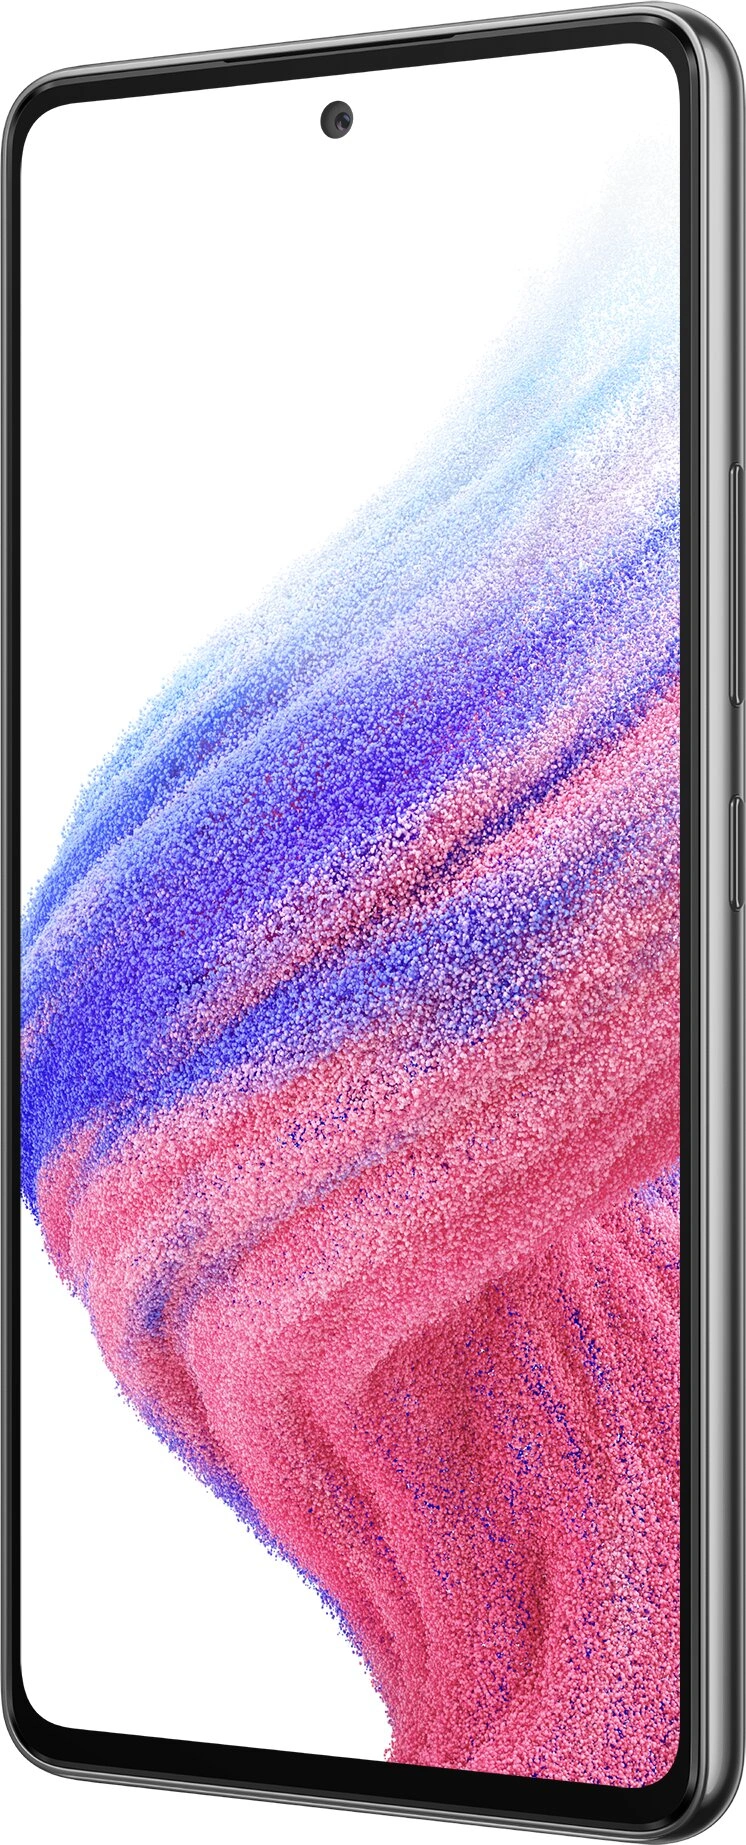 Samsung Galaxy A53 5G 6/128 GB, Black 